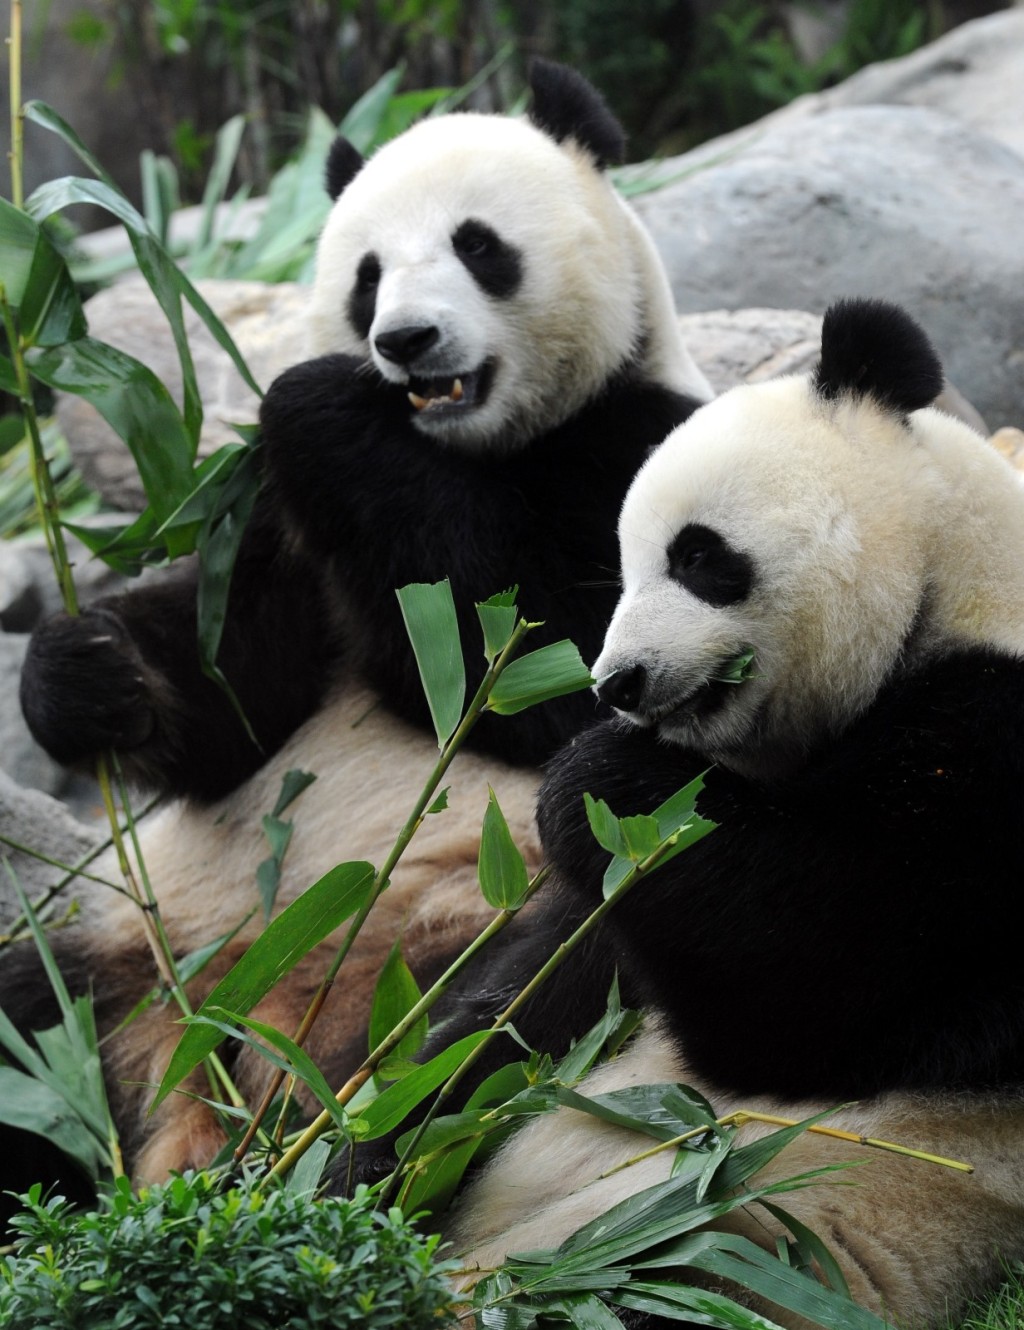 兩隻大熊貓的年齡大約是5至8歲。資料圖片